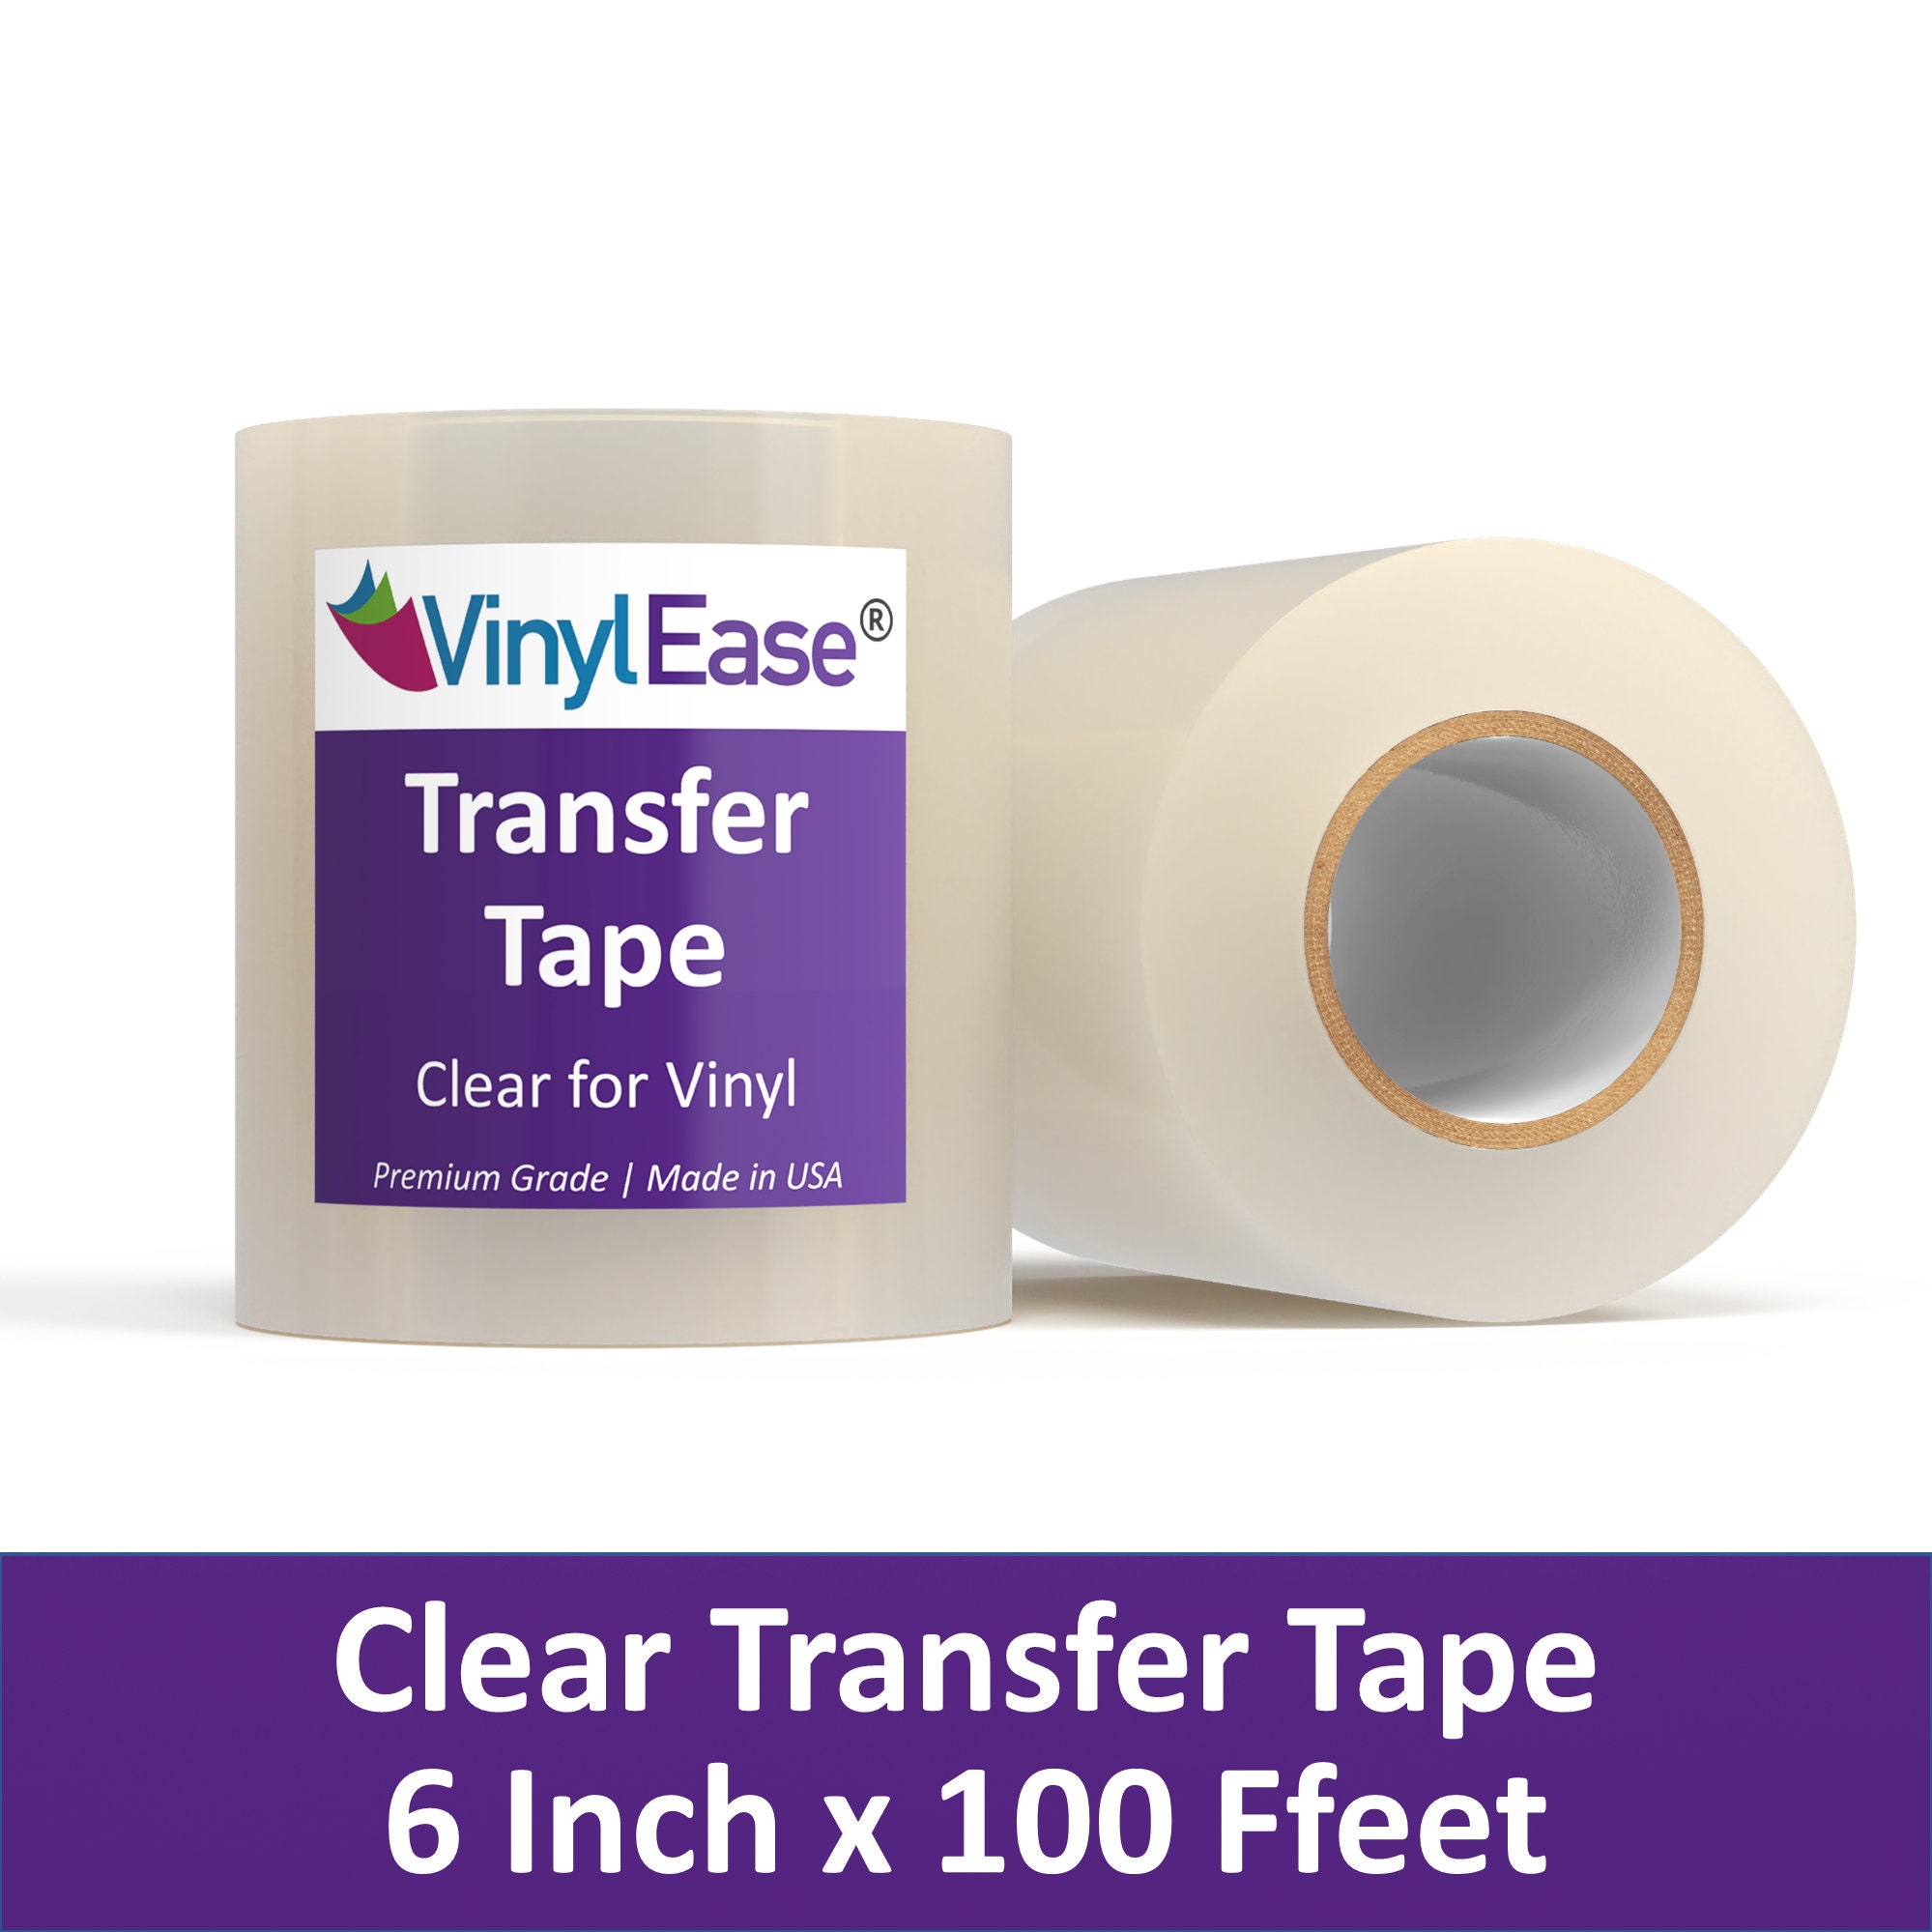 Clear Transfer Tape Vinyl